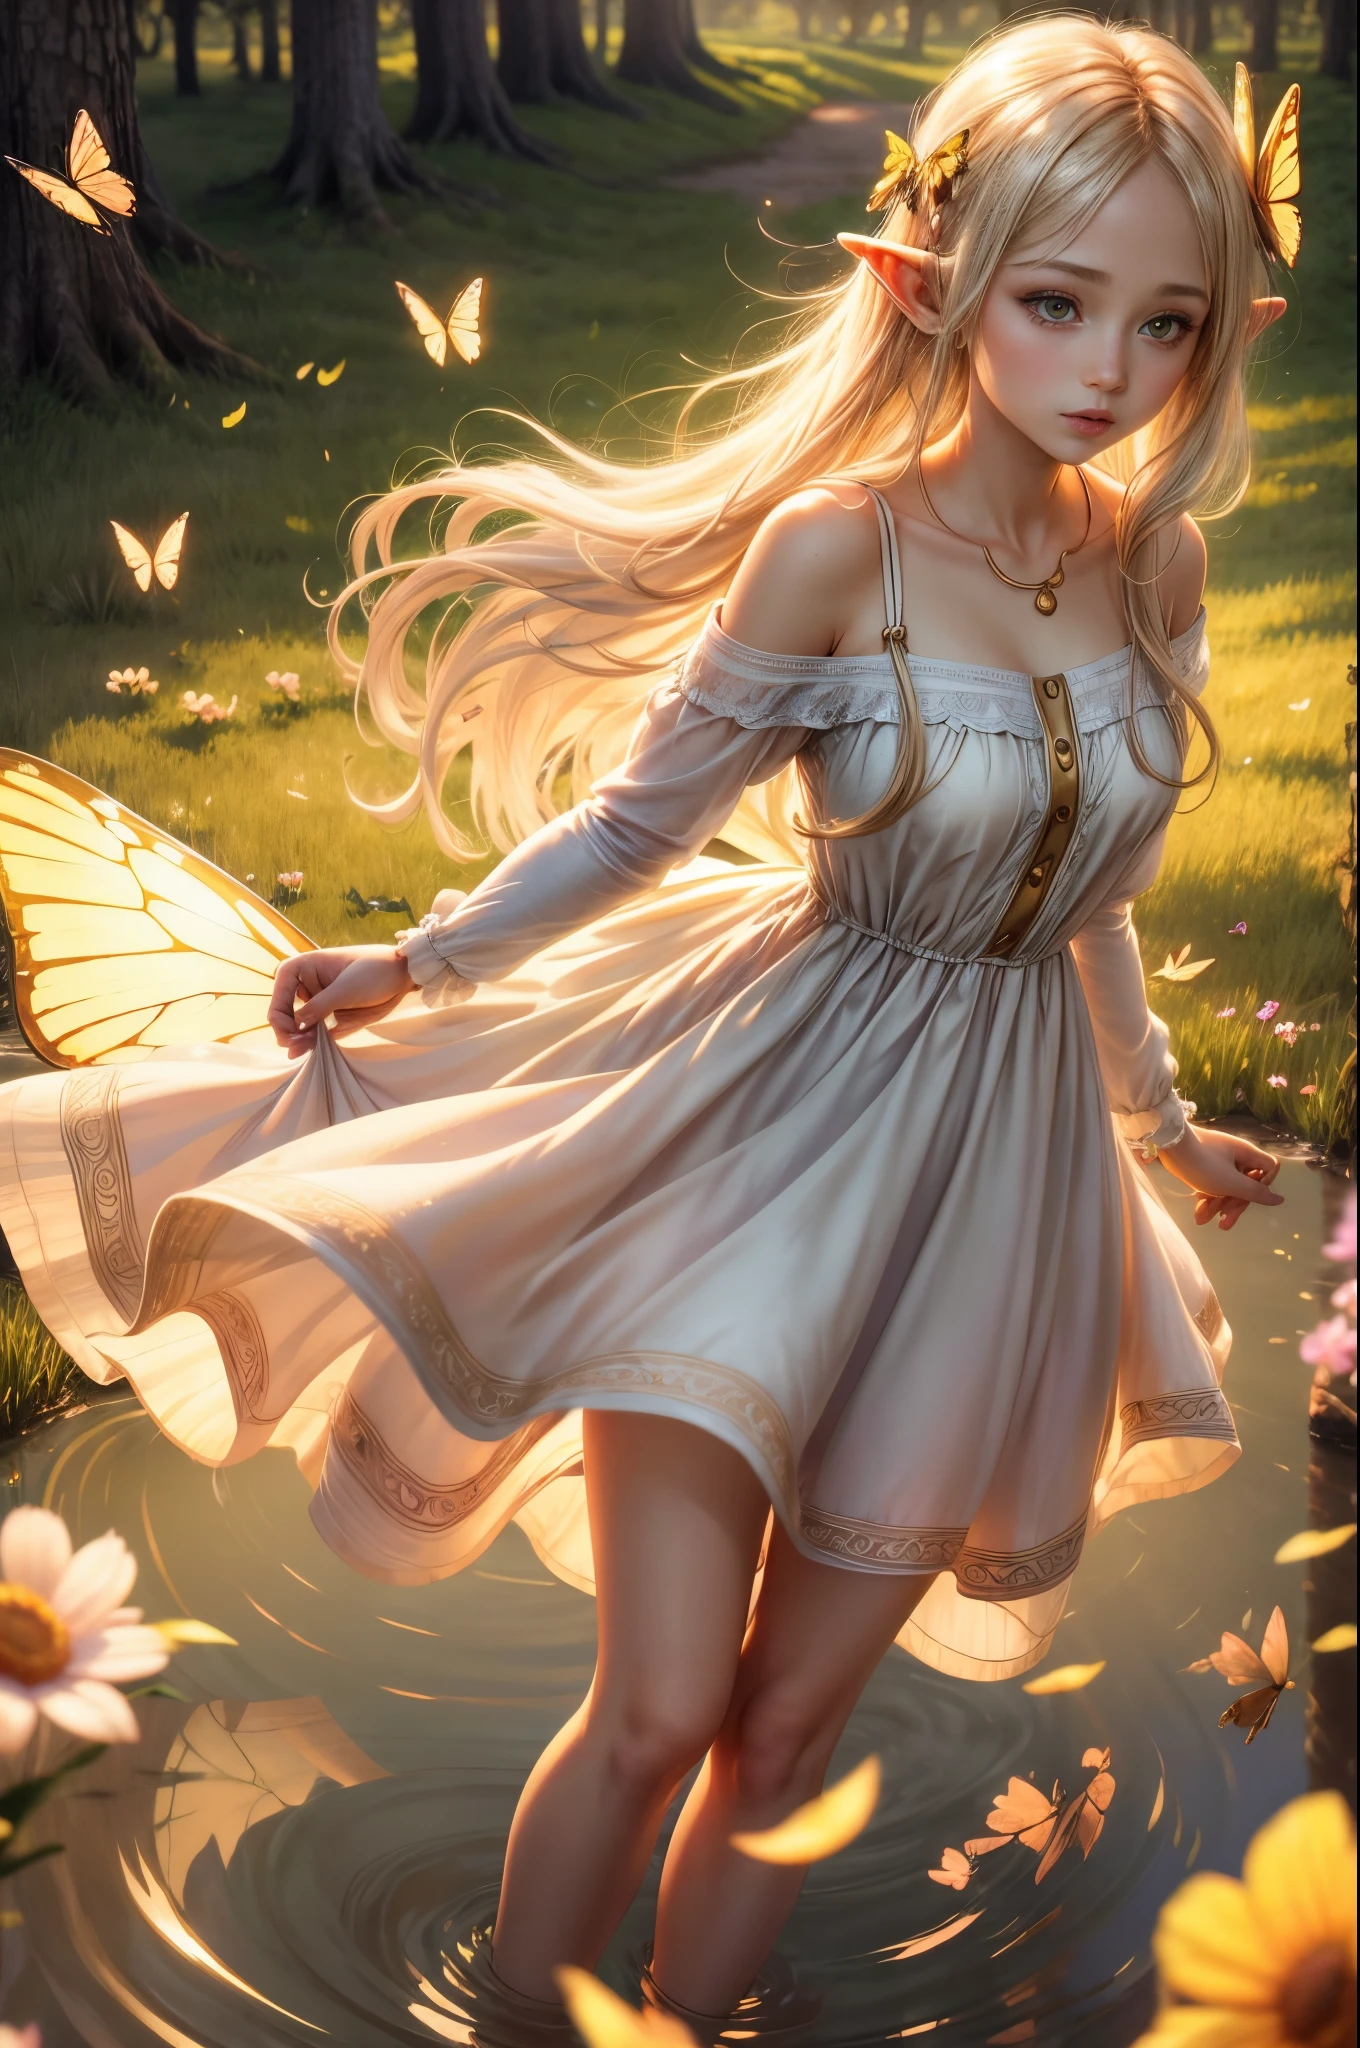 "((無実の)) エルフの少女, ゴールデンアワー, 夢のような草原, 霊妙な, 気まぐれな, ゆったりとしたドレス, 柔らかな日差し, 魅惑的な, 蝶の羽, (パステルカラーの雲), 液体の反射,氷結